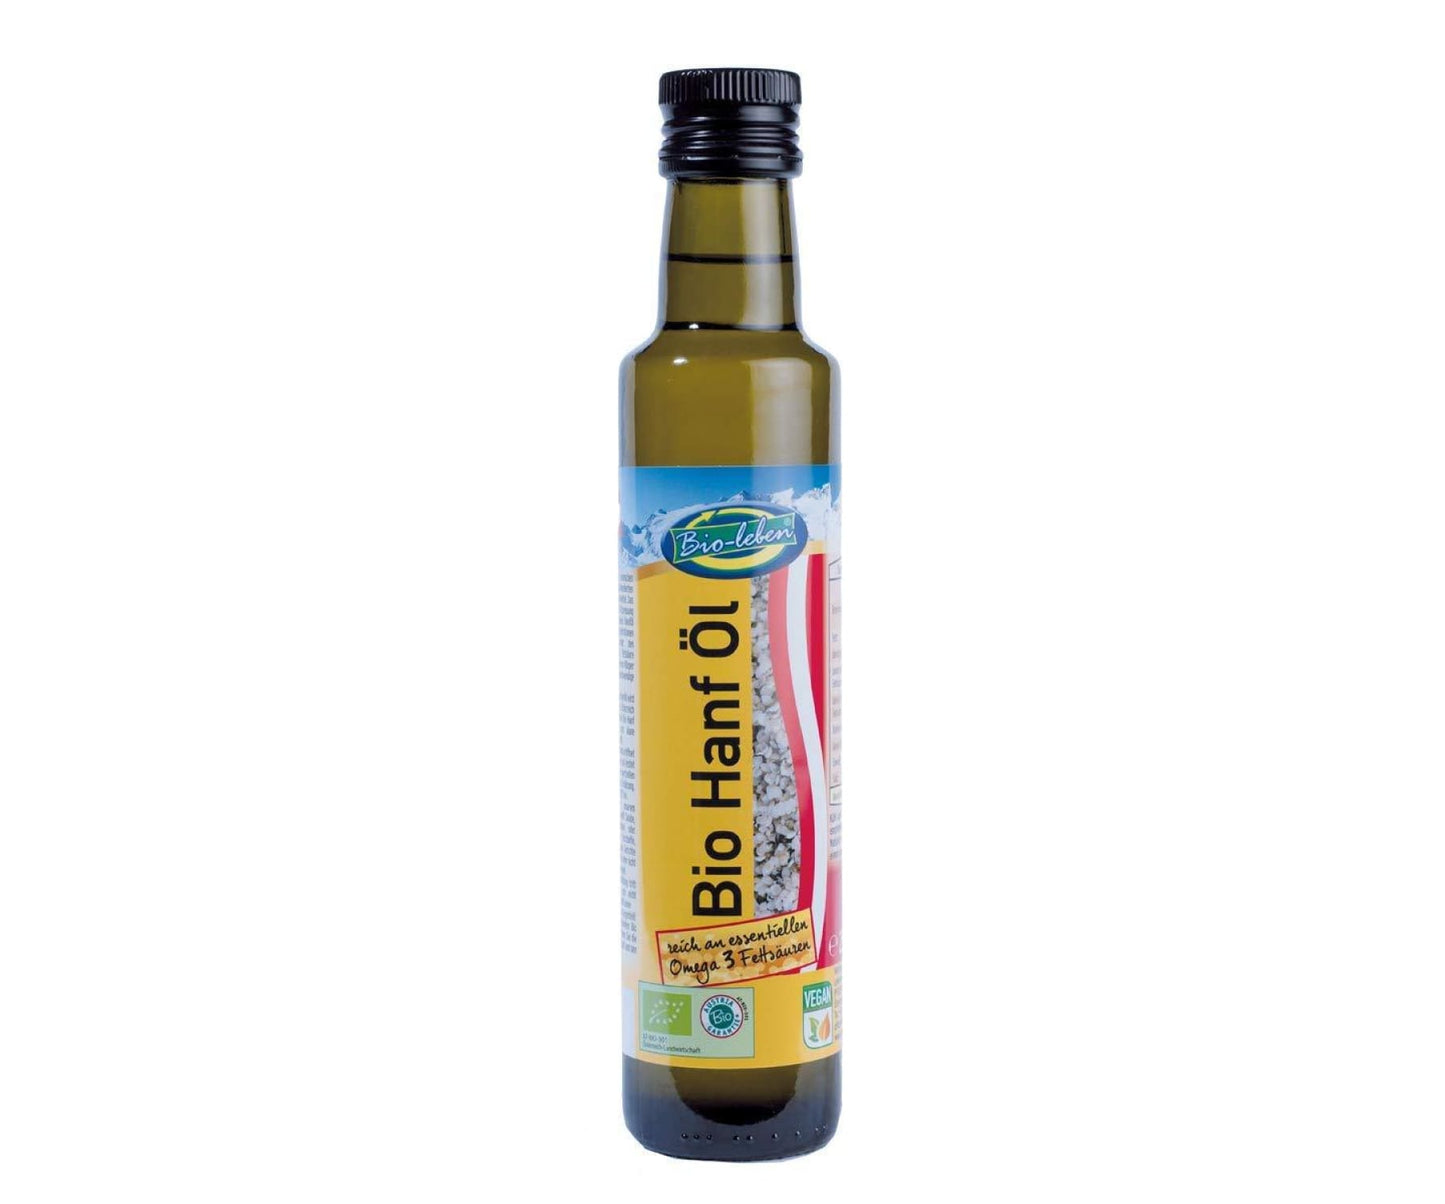 Hanf&Hemp - Bio Hanföl kaltgepresst - extra virgin 250ml - aromatisch - Speiseöl